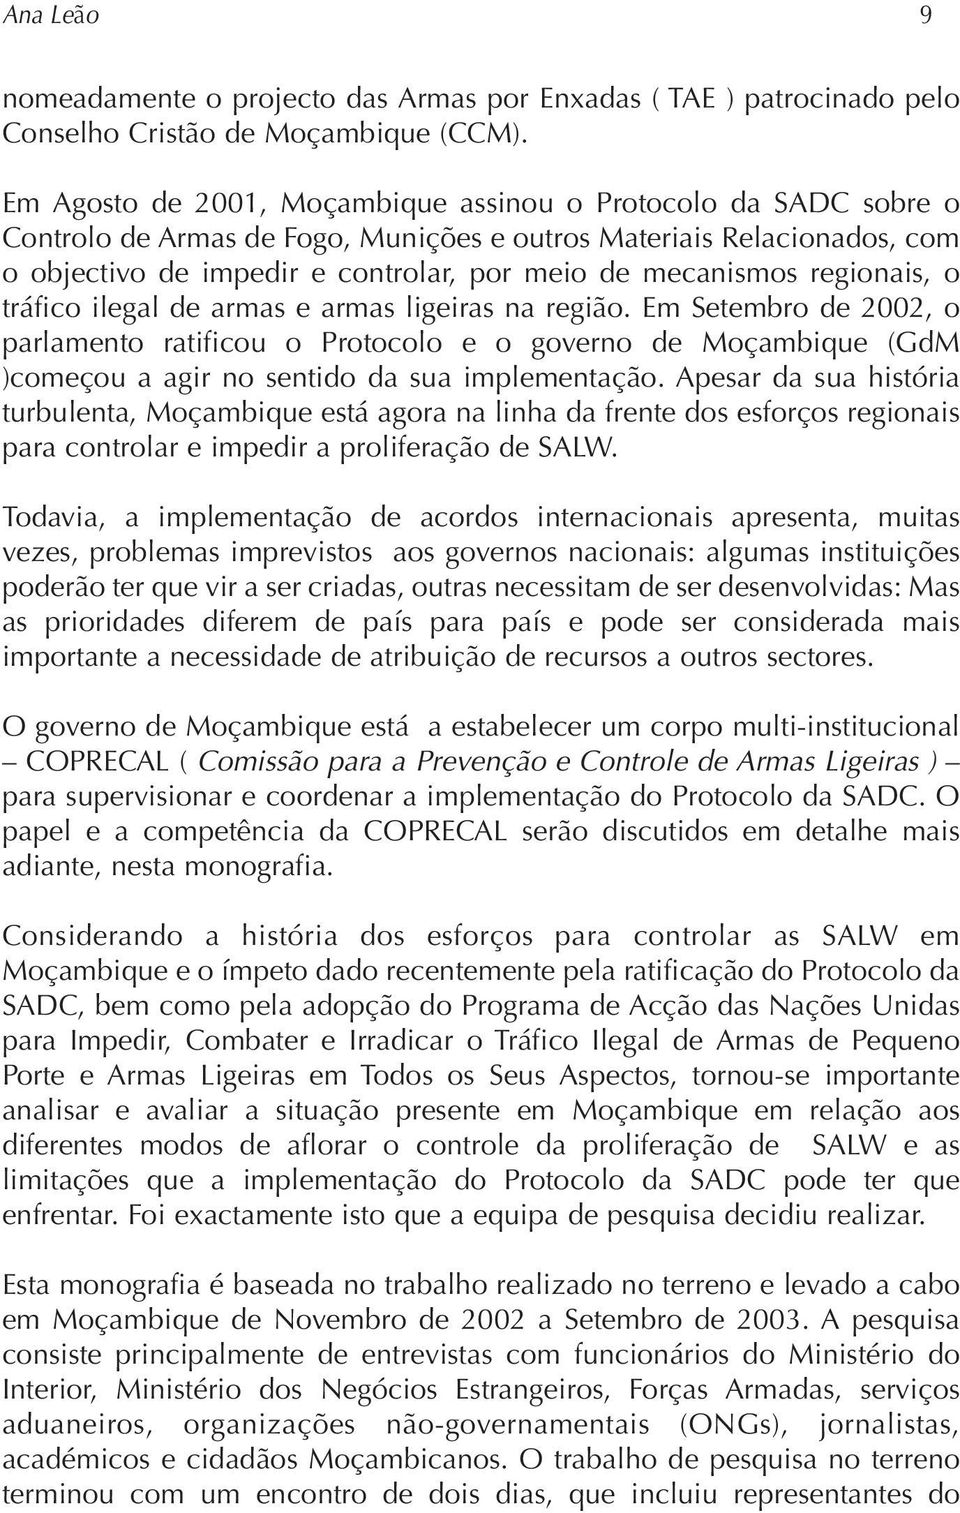 regionais, o tráfico ilegal de armas e armas ligeiras na região. Em Setembro de 2002, o parlamento ratificou o Protocolo e o governo de Moçambique (GdM )começou a agir no sentido da sua implementação.